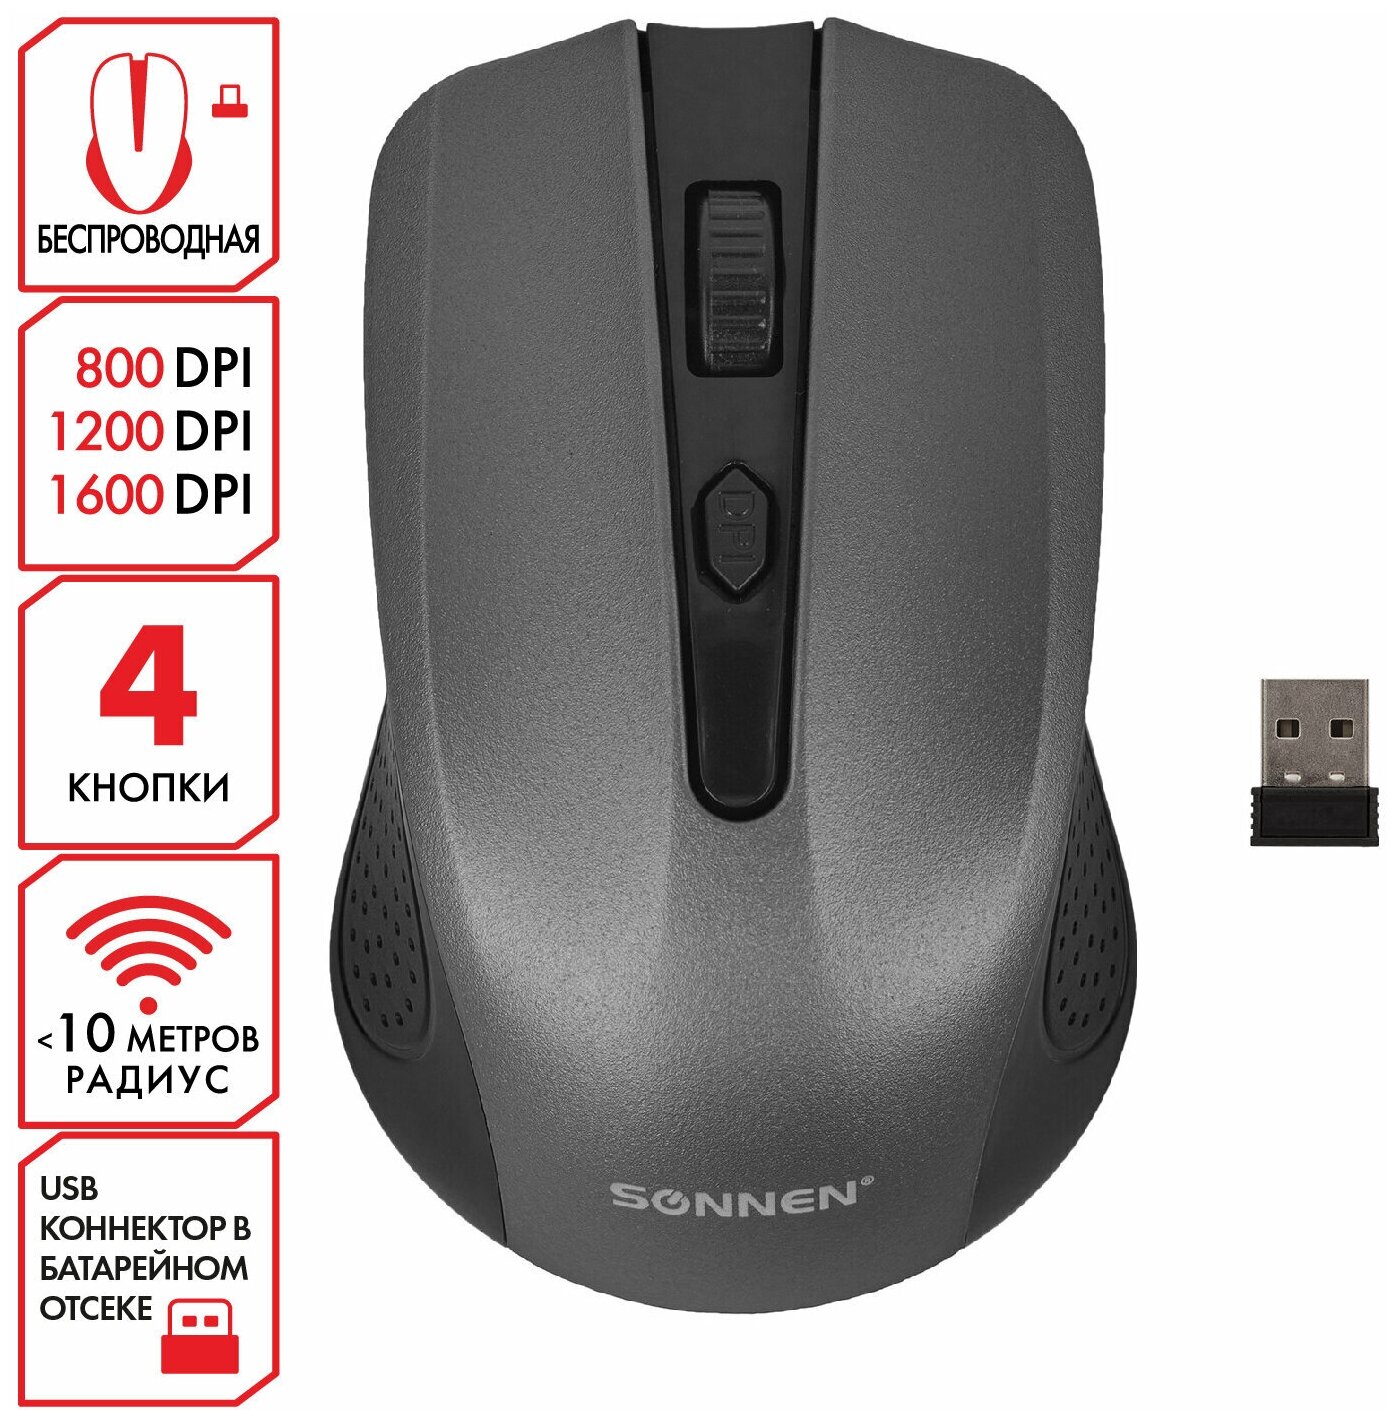 Мышь беспроводная SONNEN V99, USB, 800/1200/1600 dpi, 4 кнопки, оптическая, серая,513528